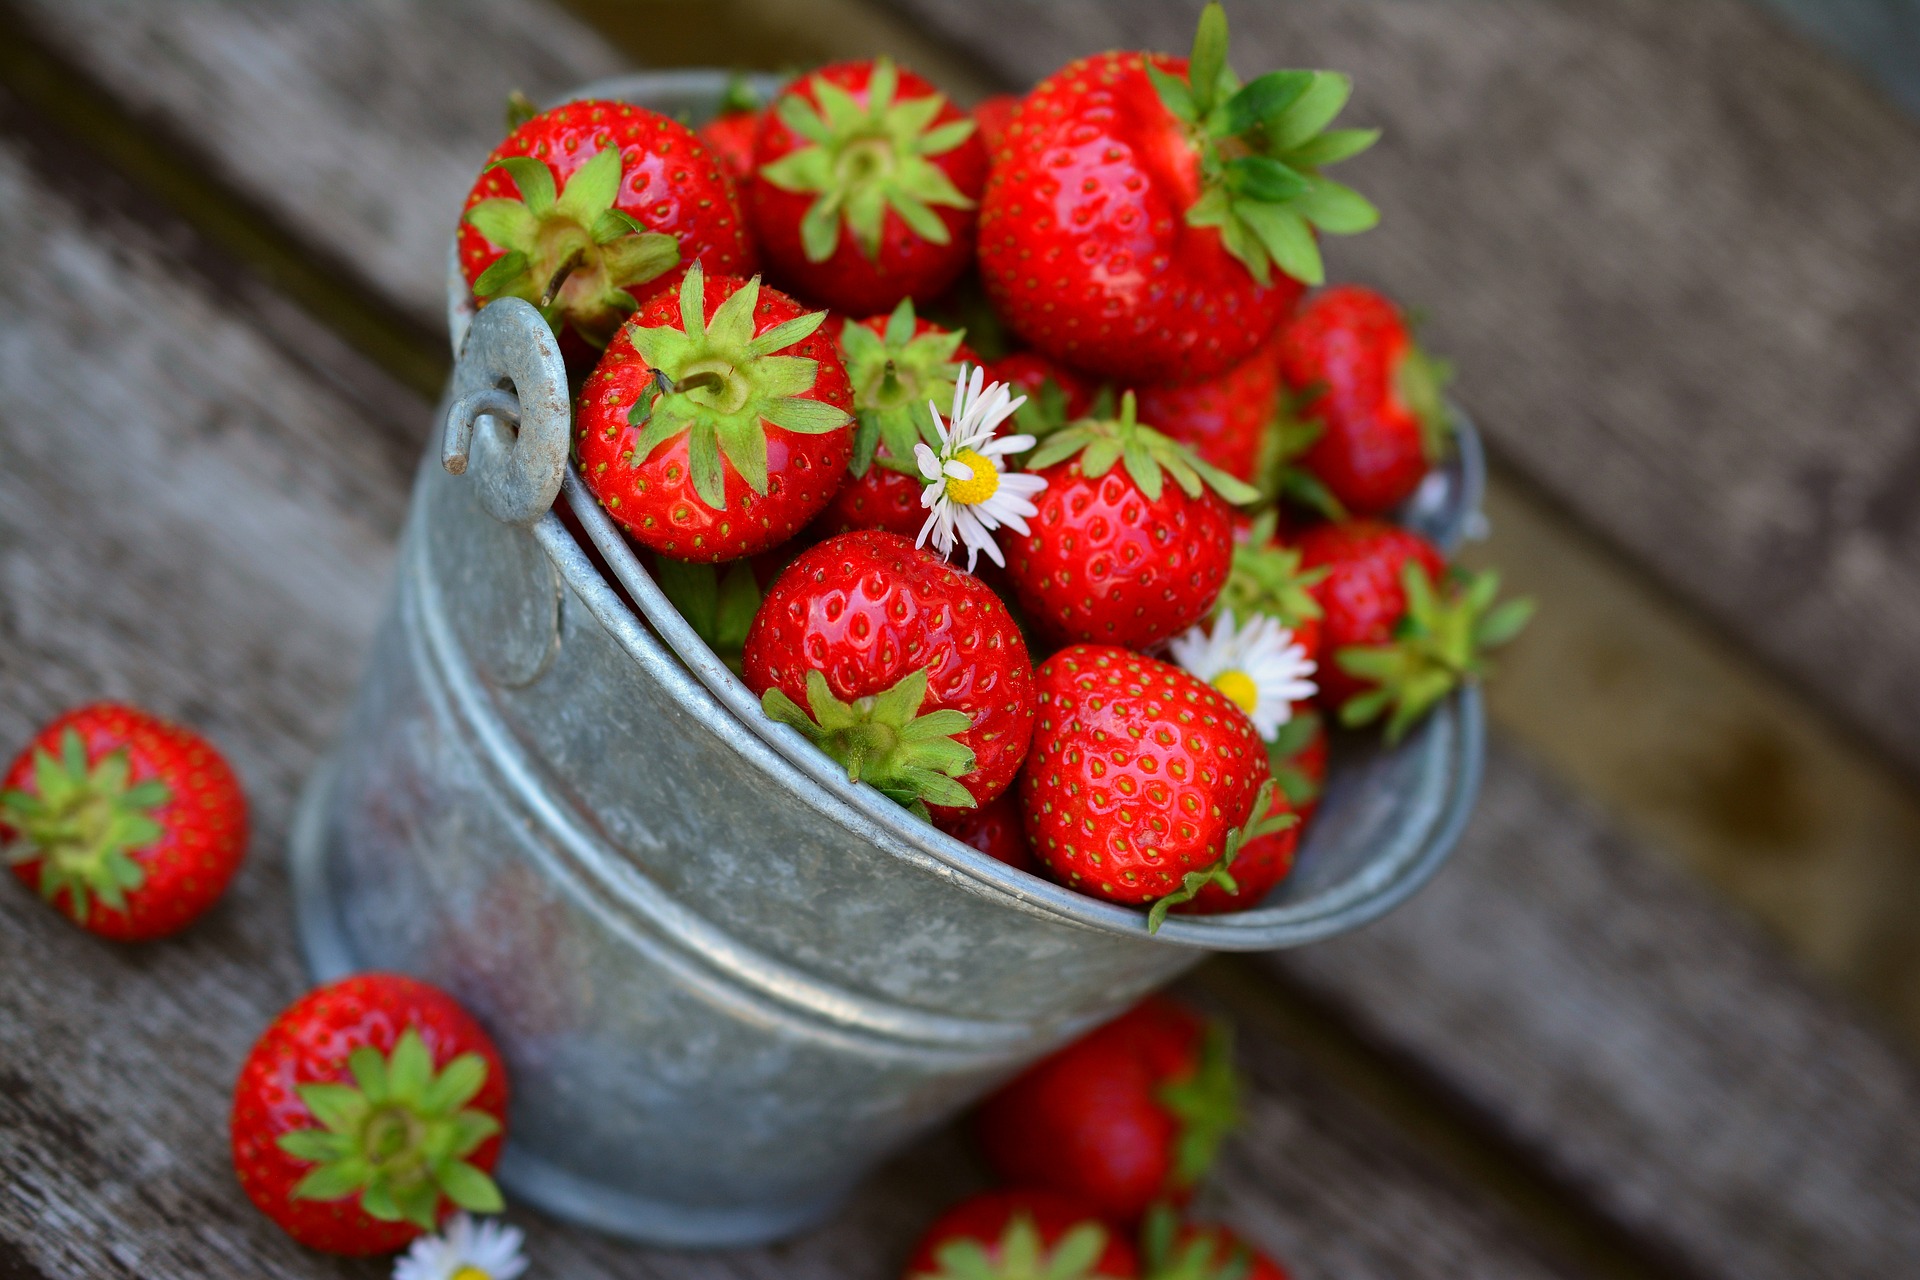 eesti-veini-ja-toidu-sobitamine-mamm&frukt-pärnu-veinimaja-rosé-vein-maasikas-ebaküdooniaga-maasikad-ämbris